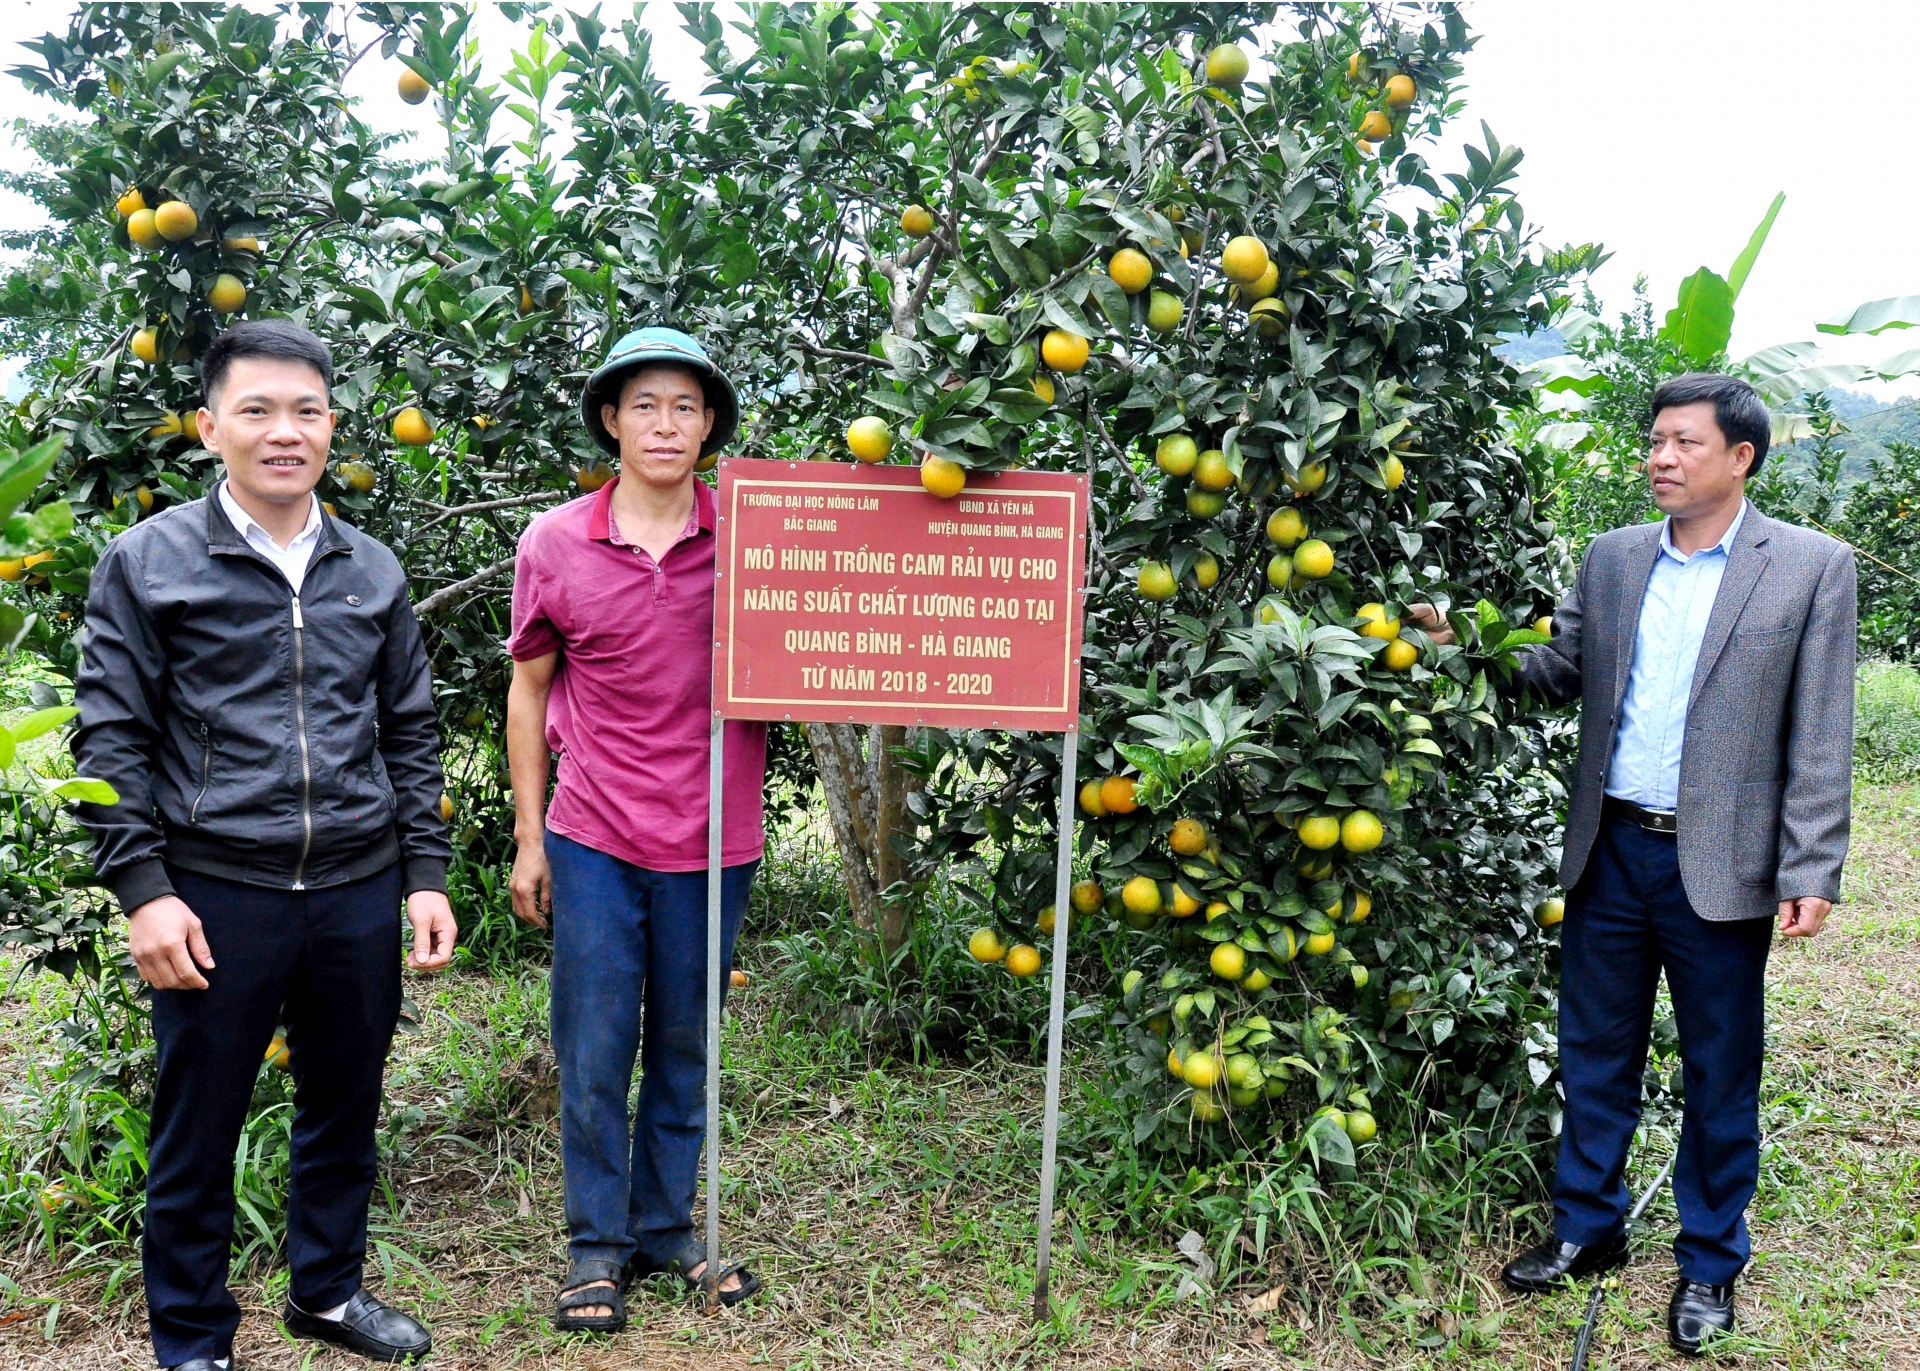 Vườn cam giống mới CS1, sau gần 5 năm trồng tại thôn Tràng Mới, xã Yên Hà, huyện Quang Bình đã cho năng suất khá cao.